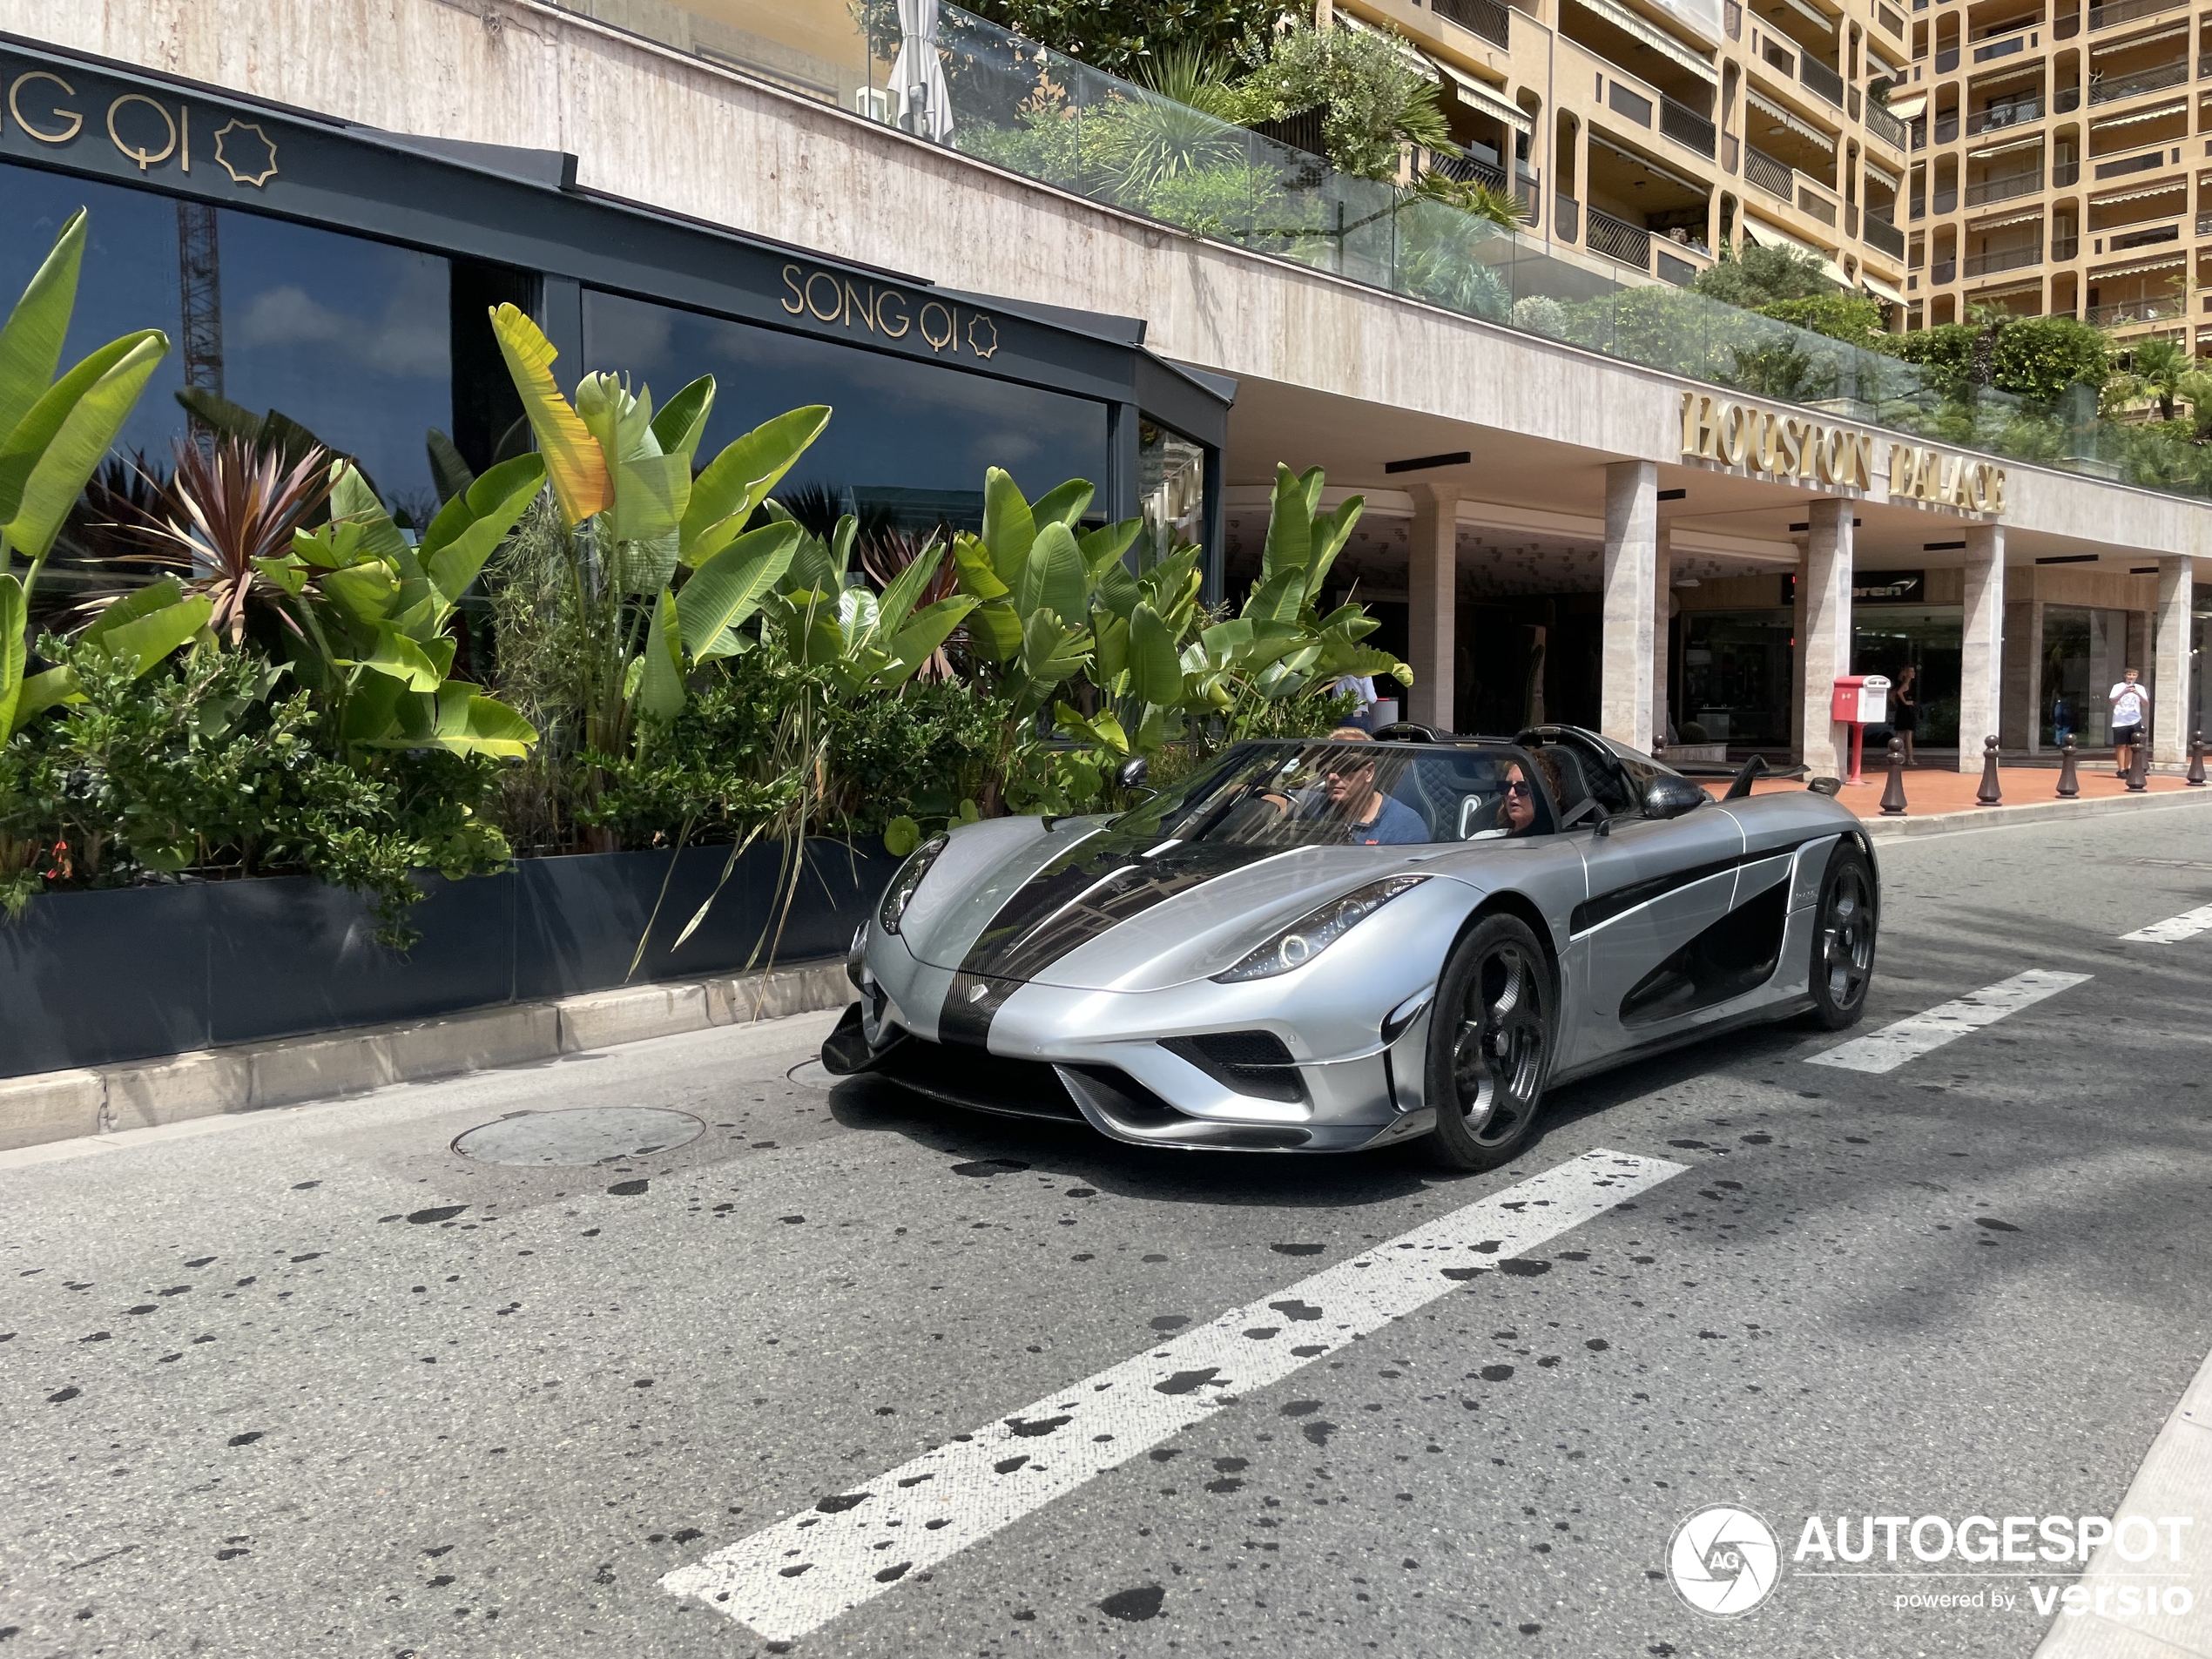 Još jedan Koenigsegg se pojavio u Monaku